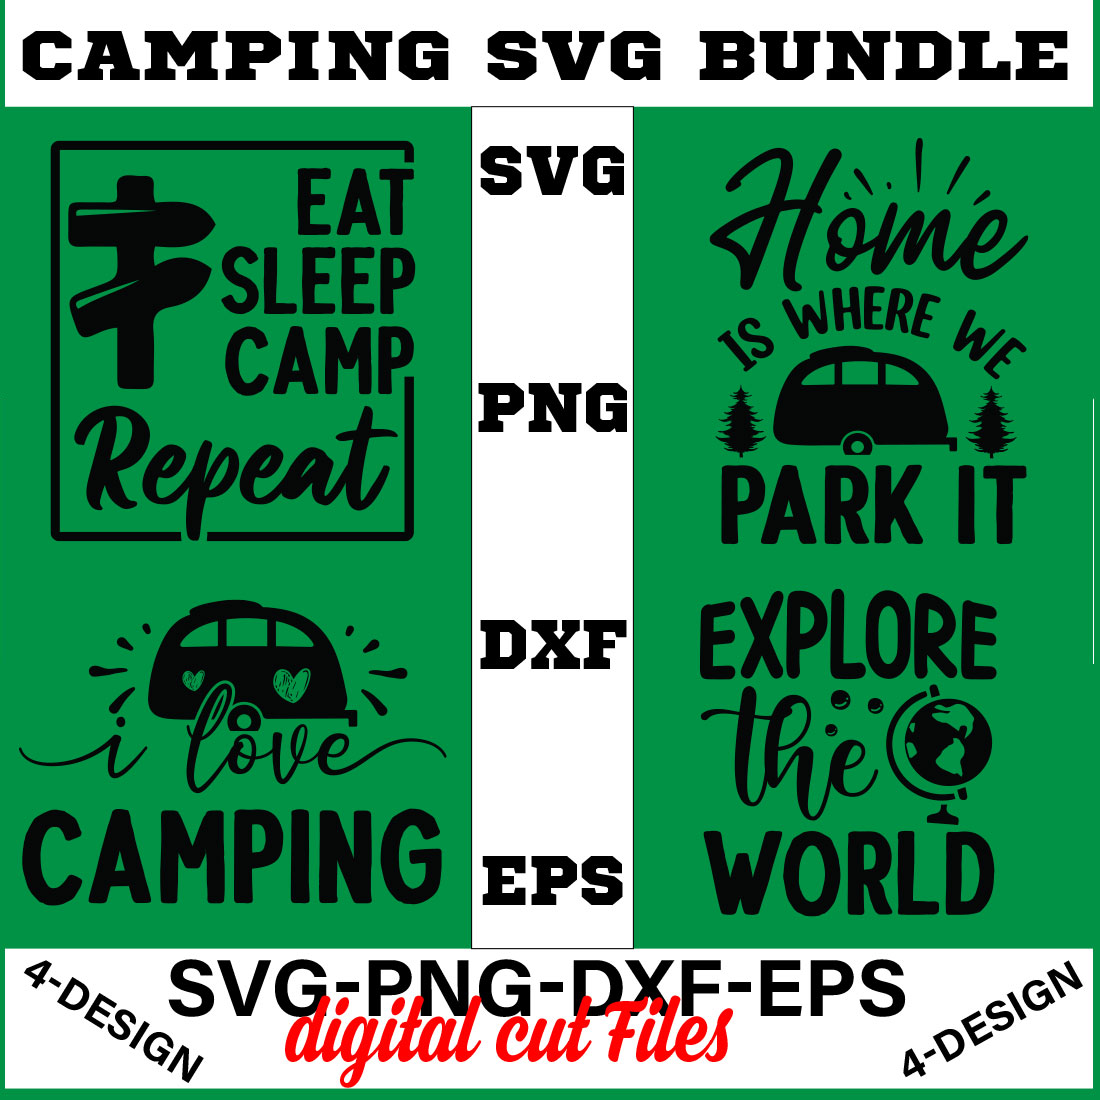 Camping SVG T-shirt Design Bundle Volume-02 cover image.